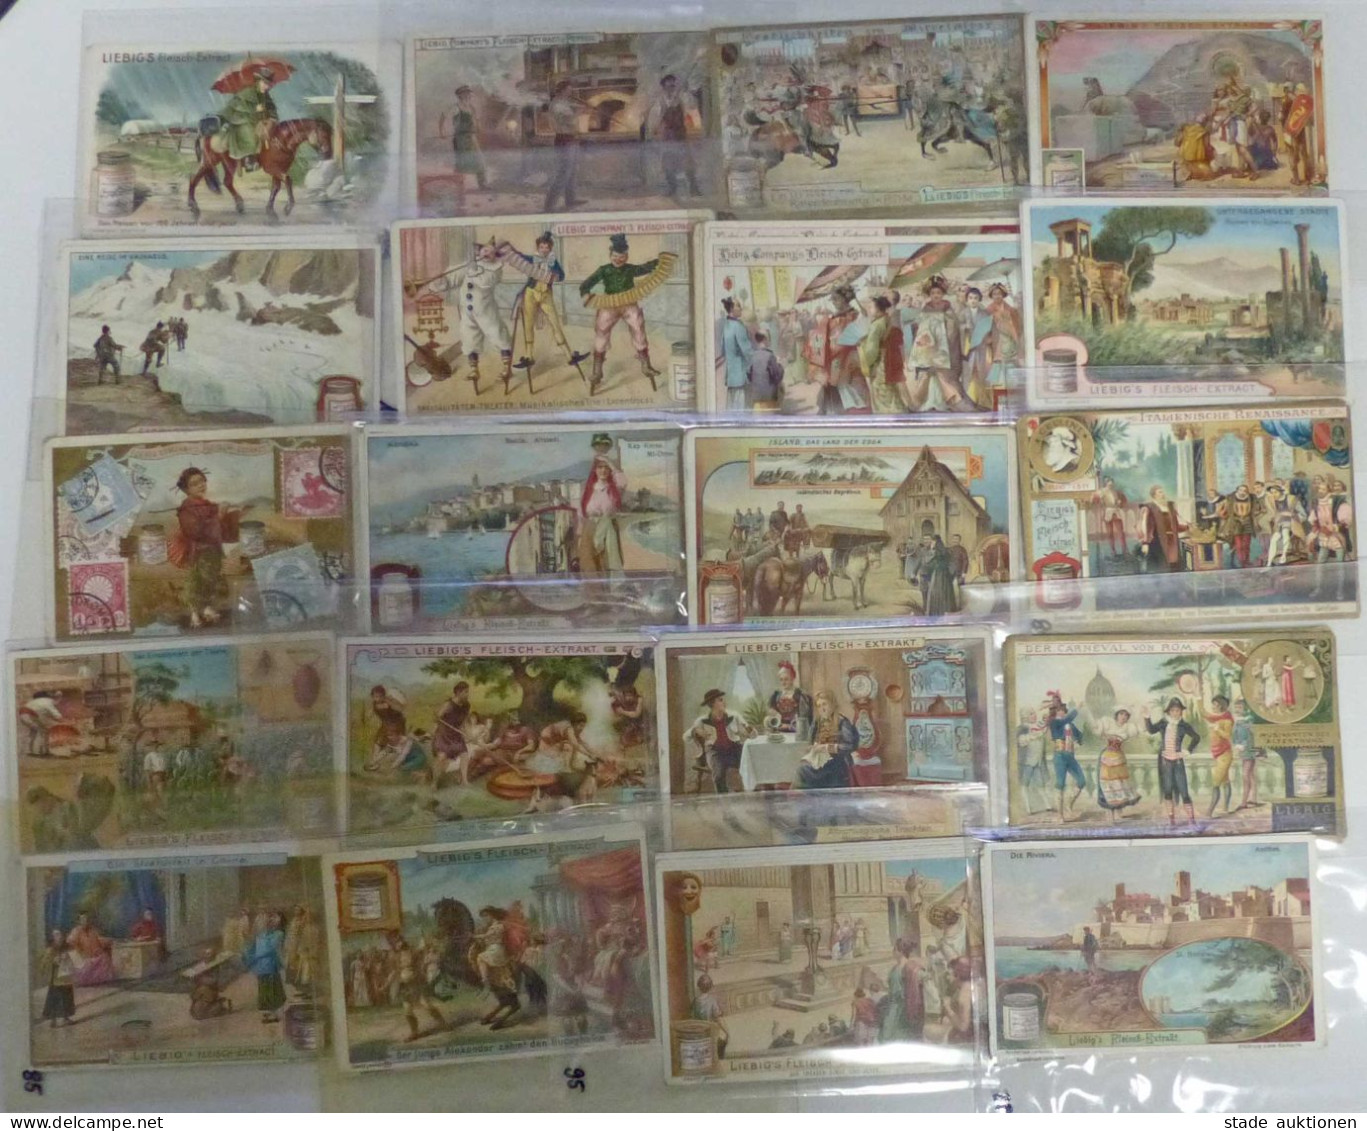 LIEBIG Sammlung aus Nachlass mit circa 400 Serien, also mehrern tausend Bildchen I-II